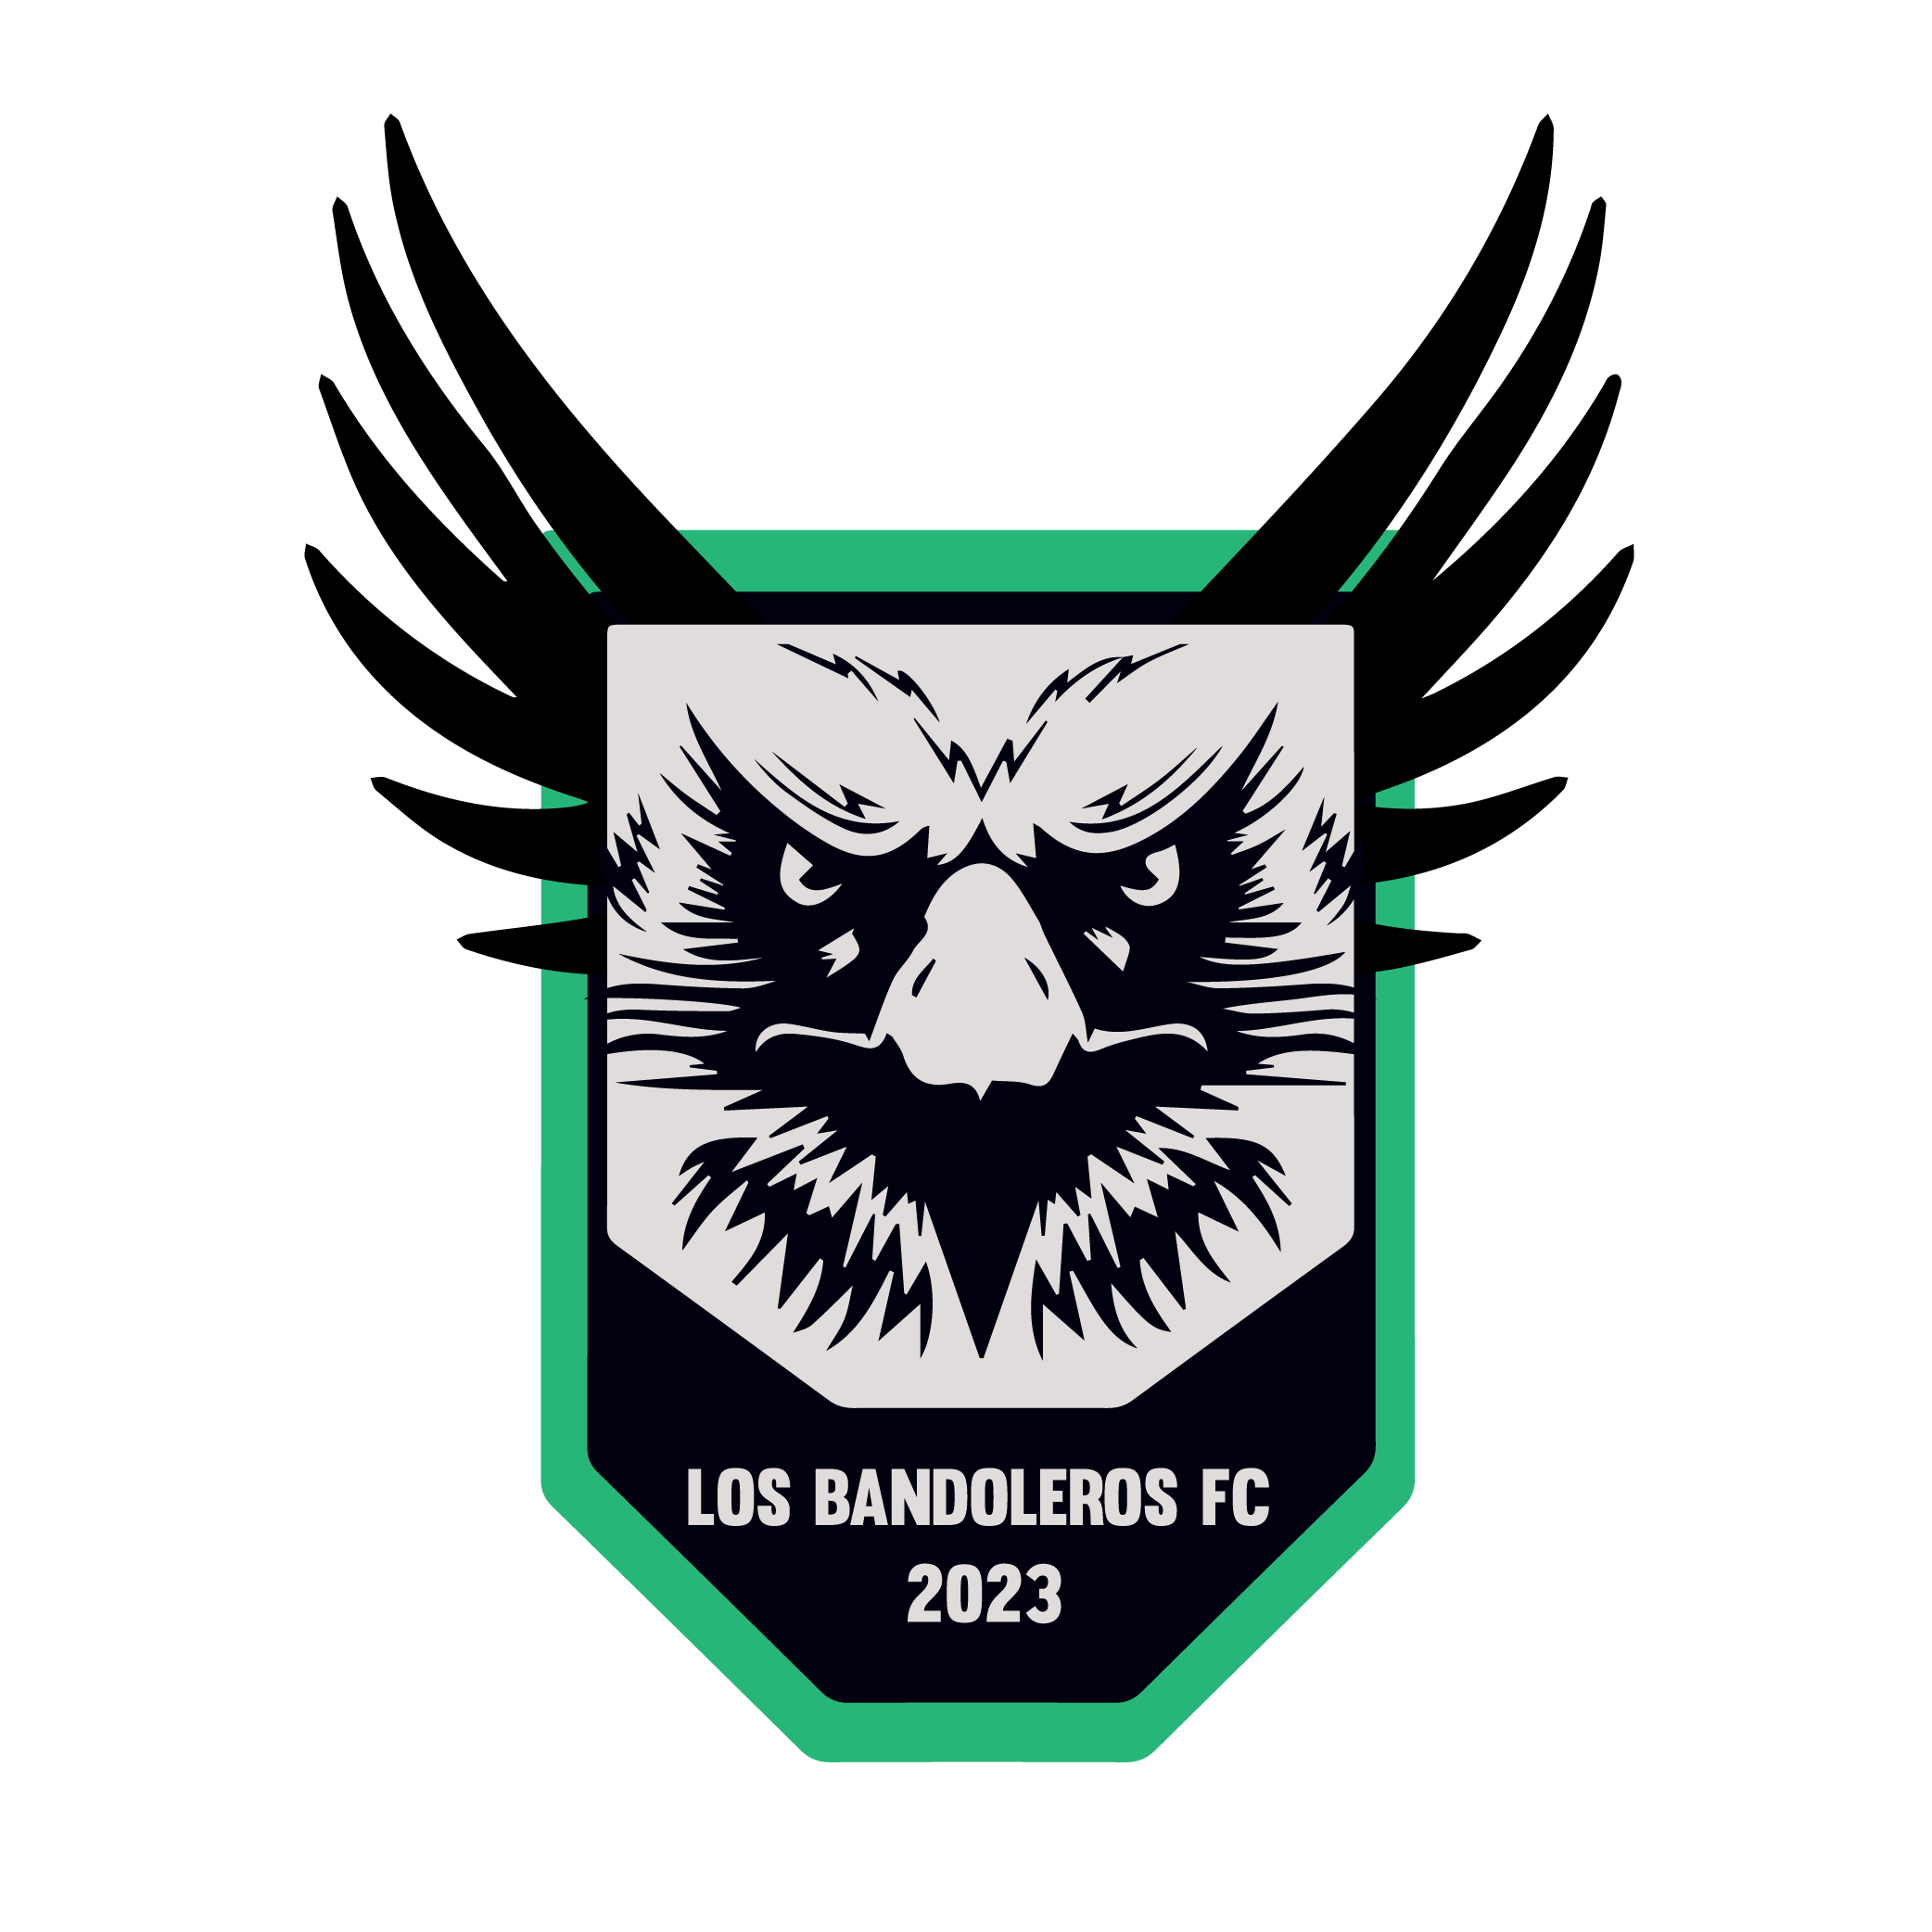 Los Bandoleros FC